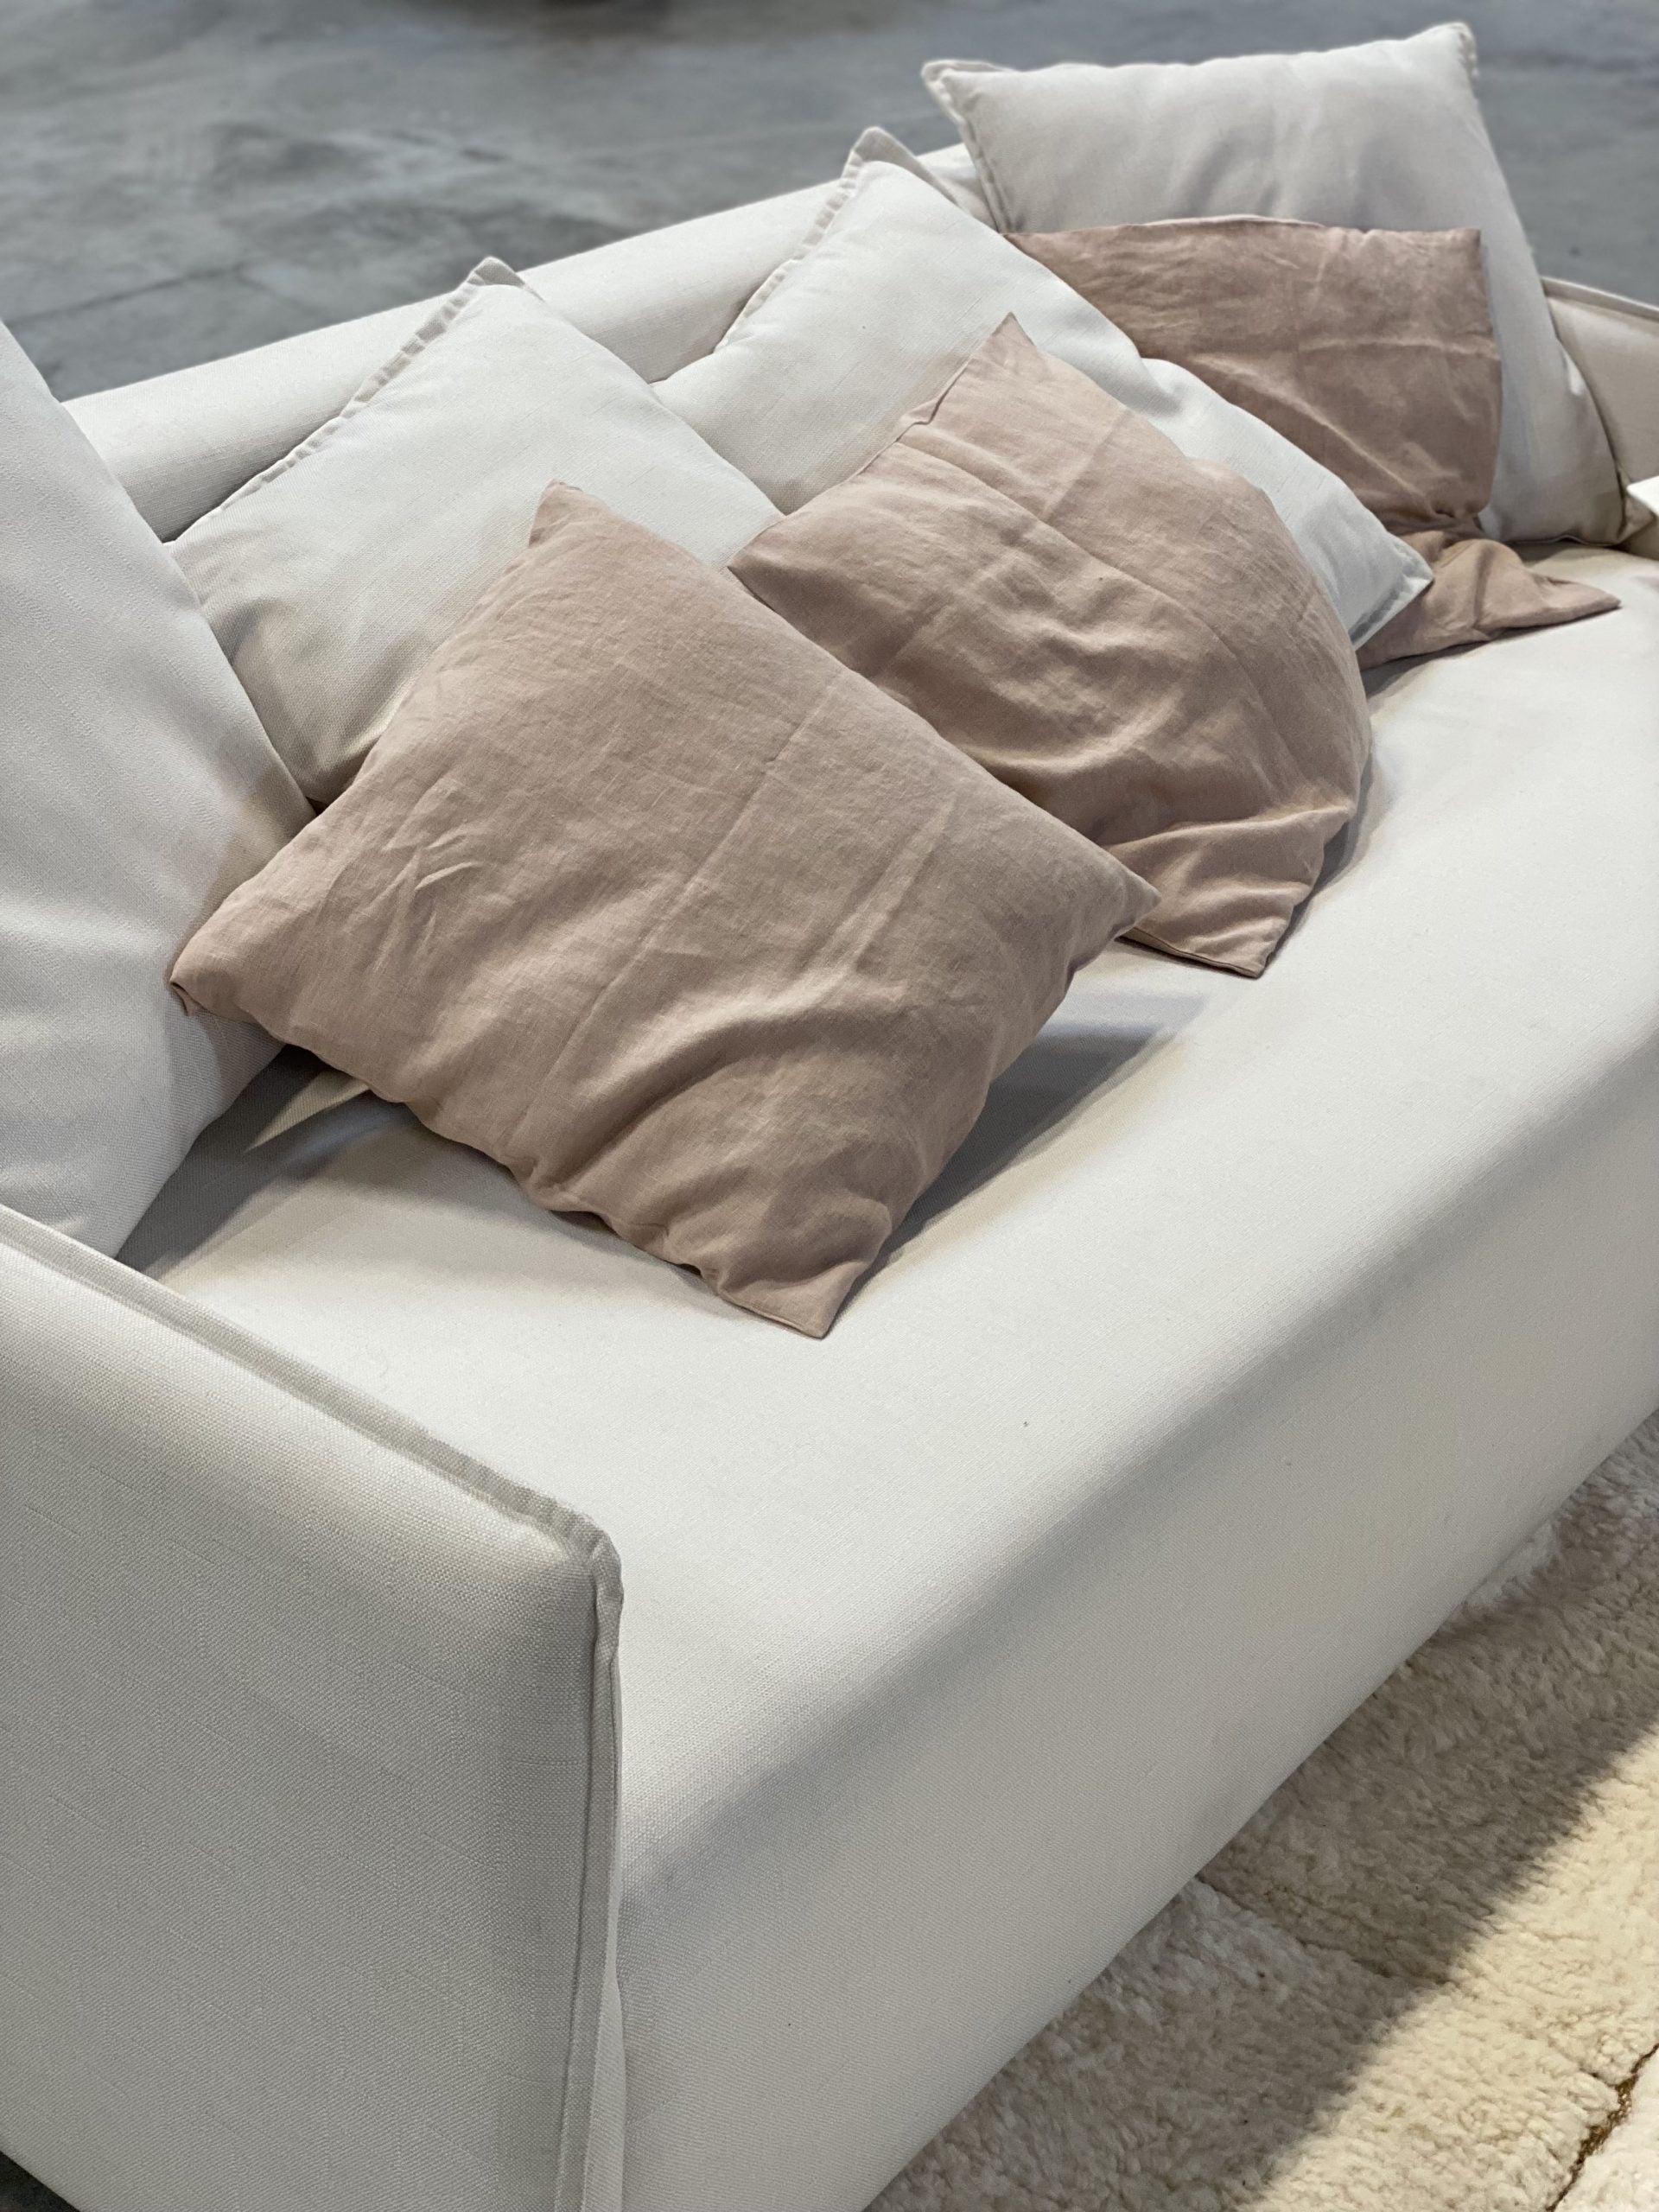 Linen pillowcases Portobello